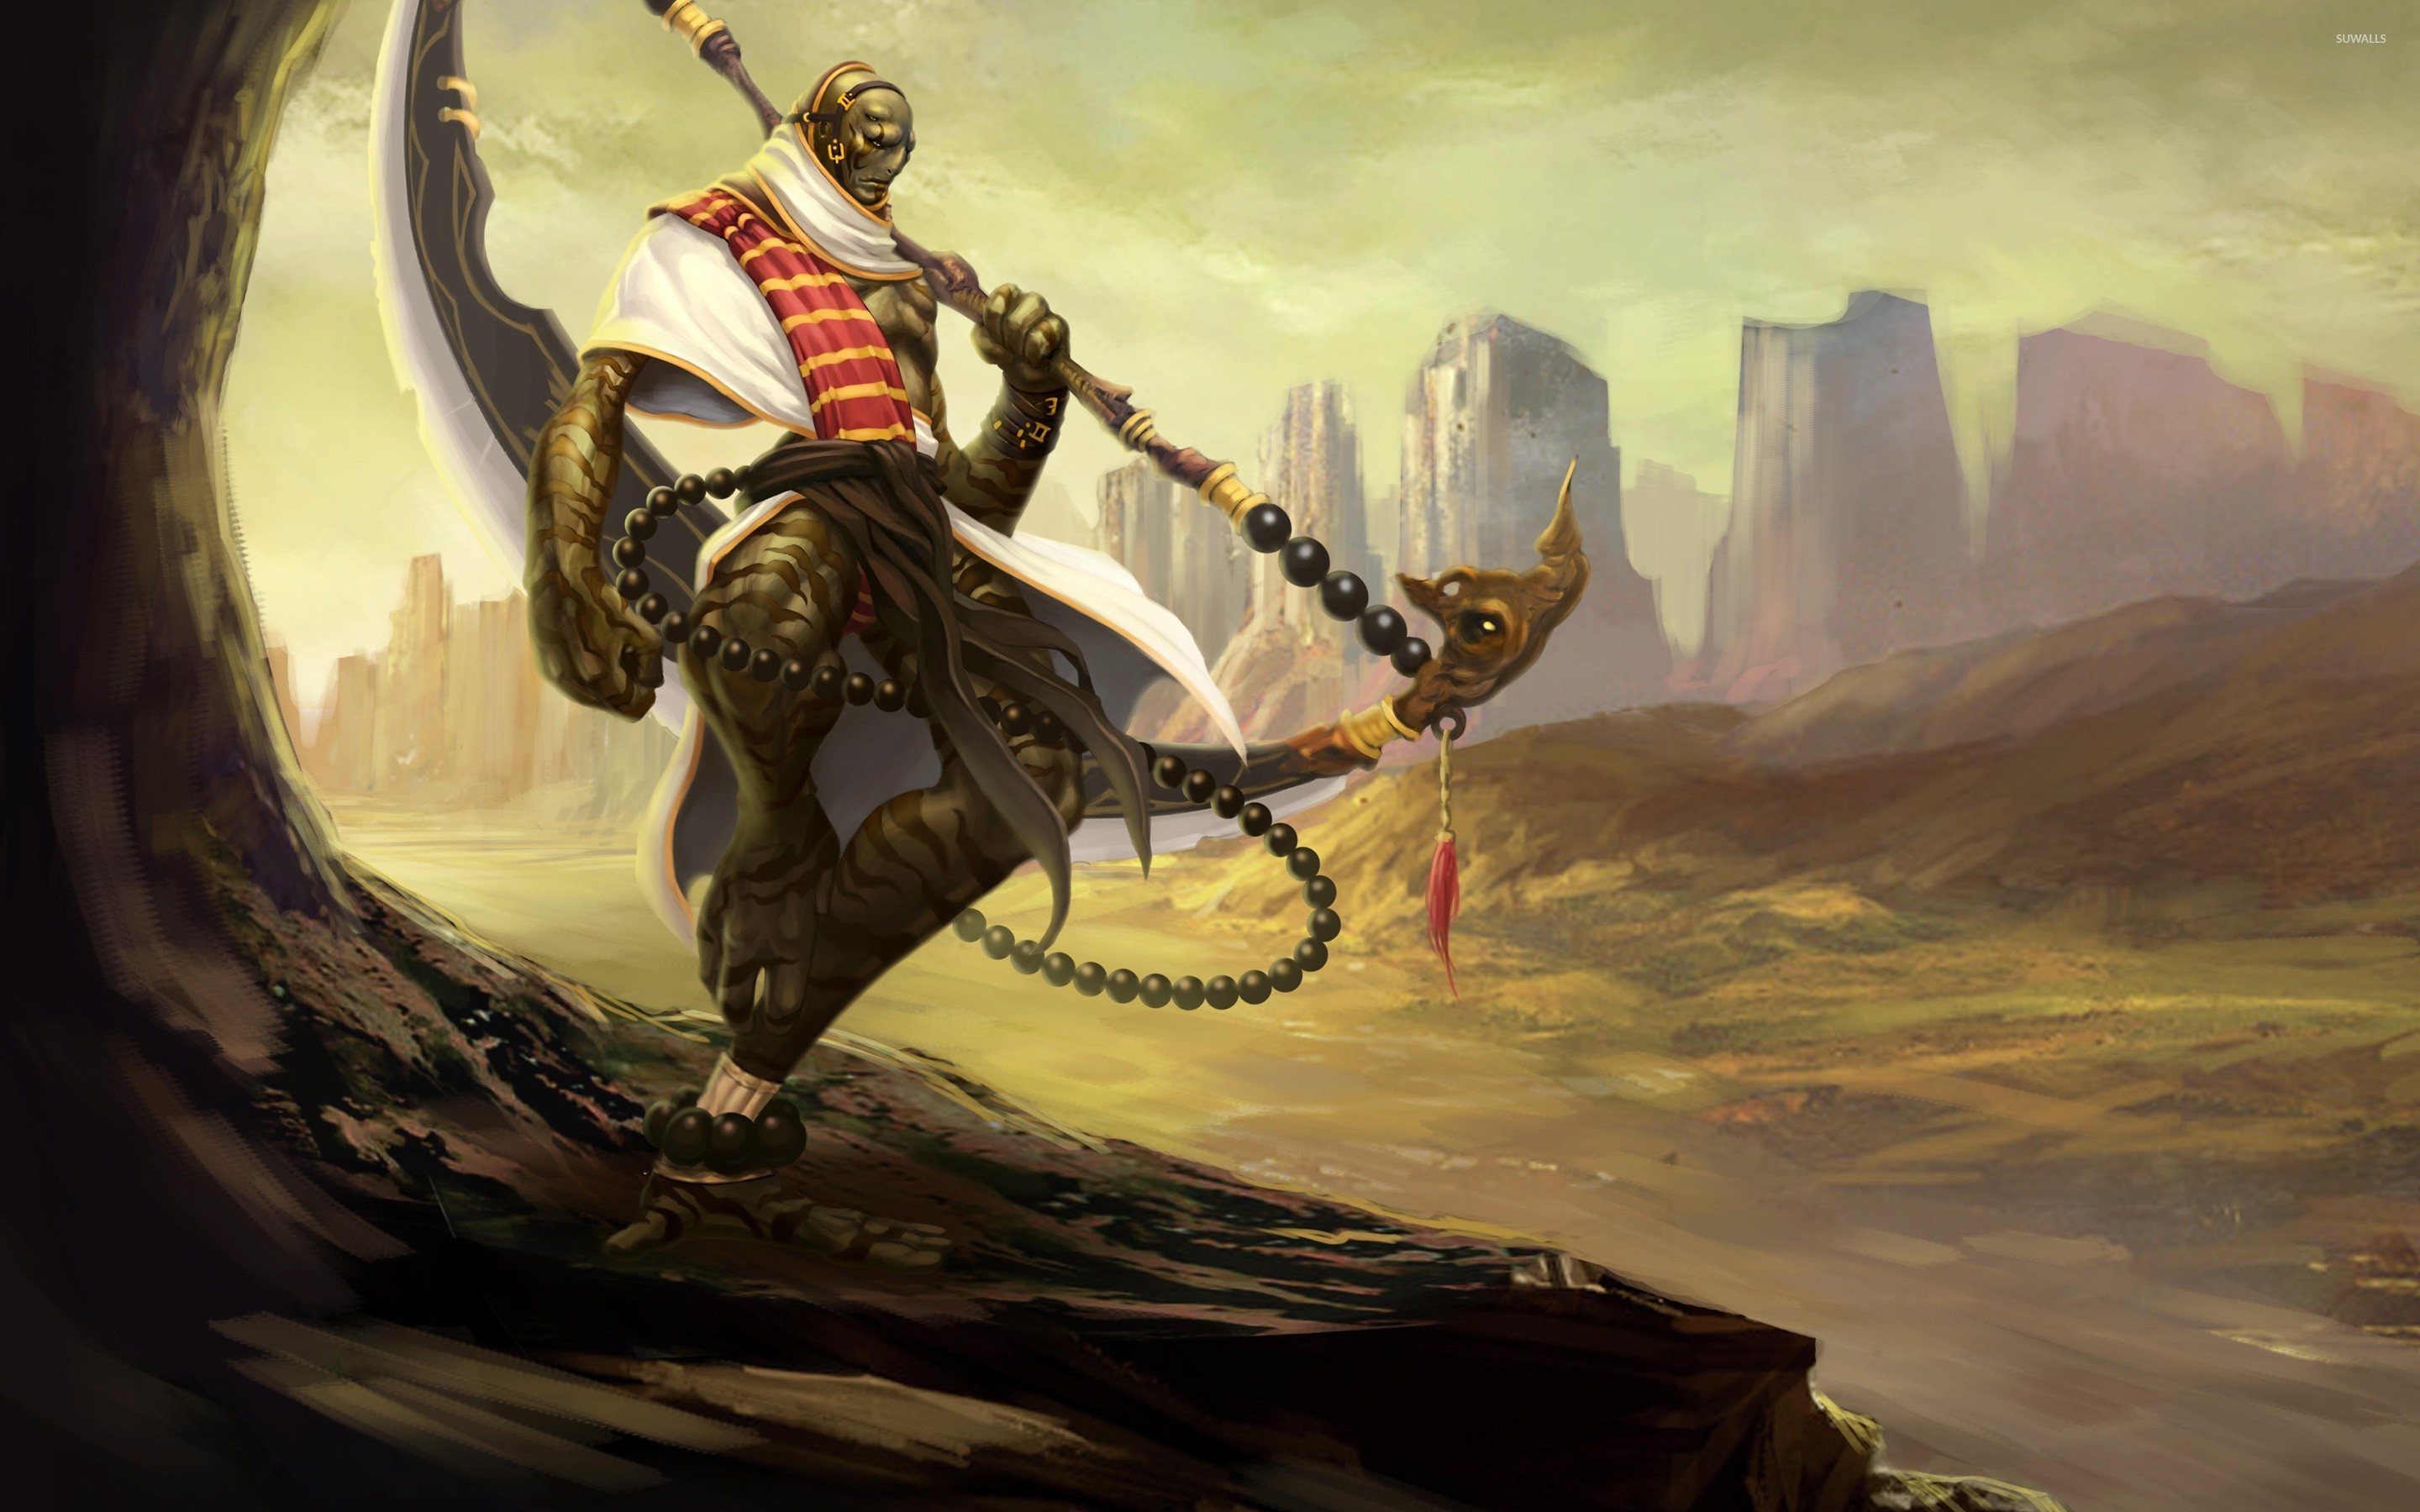 Warrior creature in the desert wallpaper wallpaper